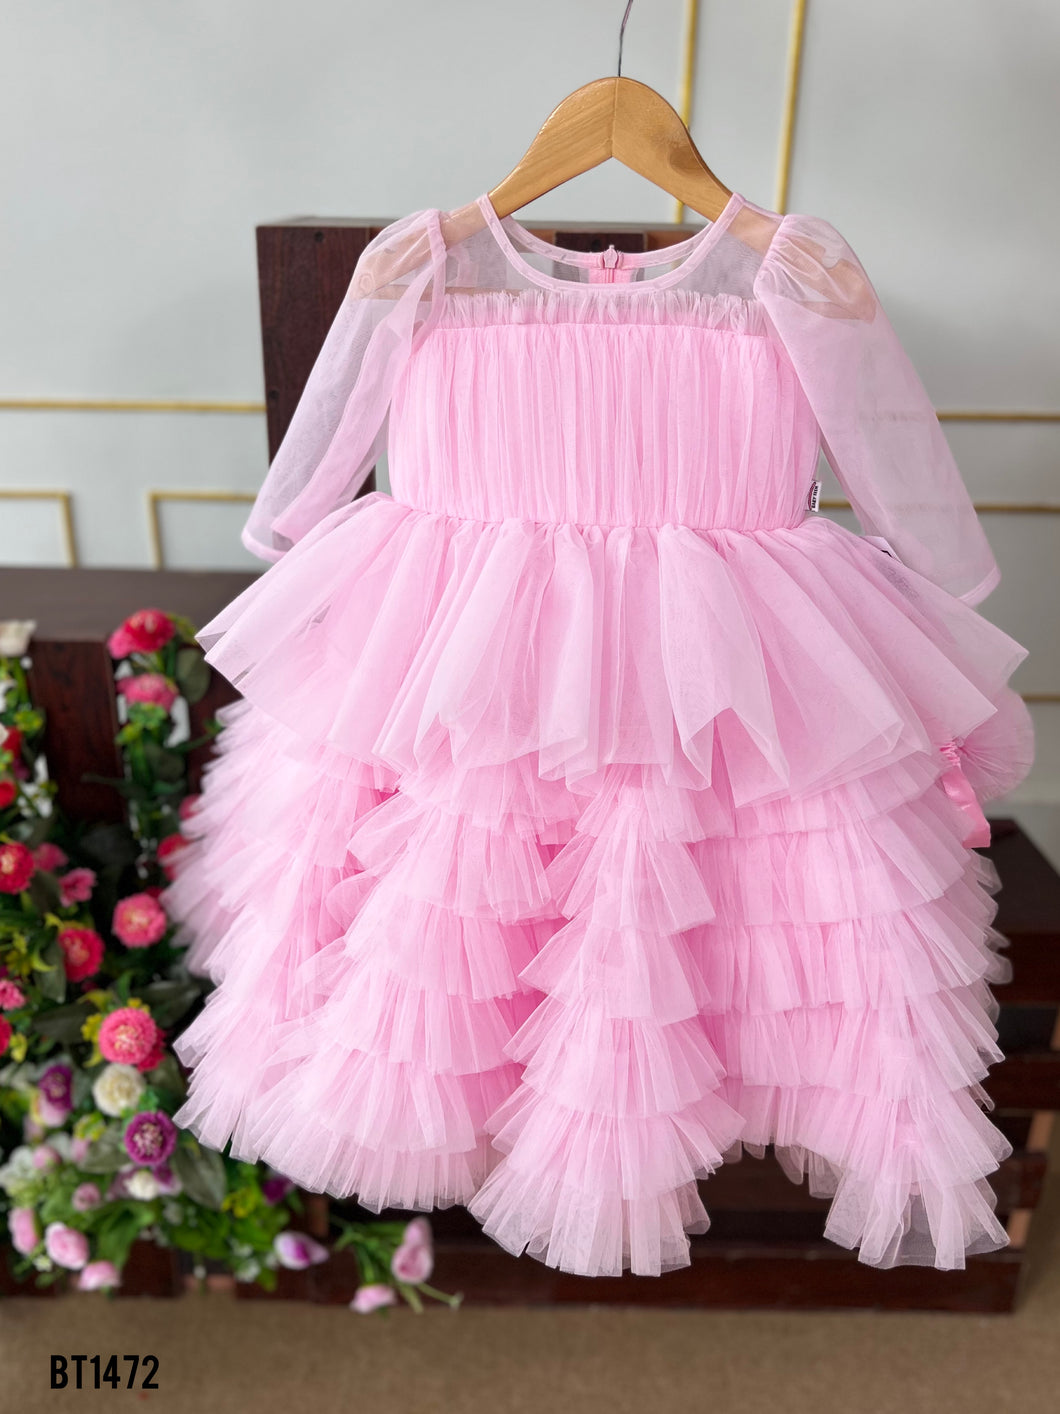 BT1472 Cherished Blush Frolic Dress – Every Twirl Tells a Story